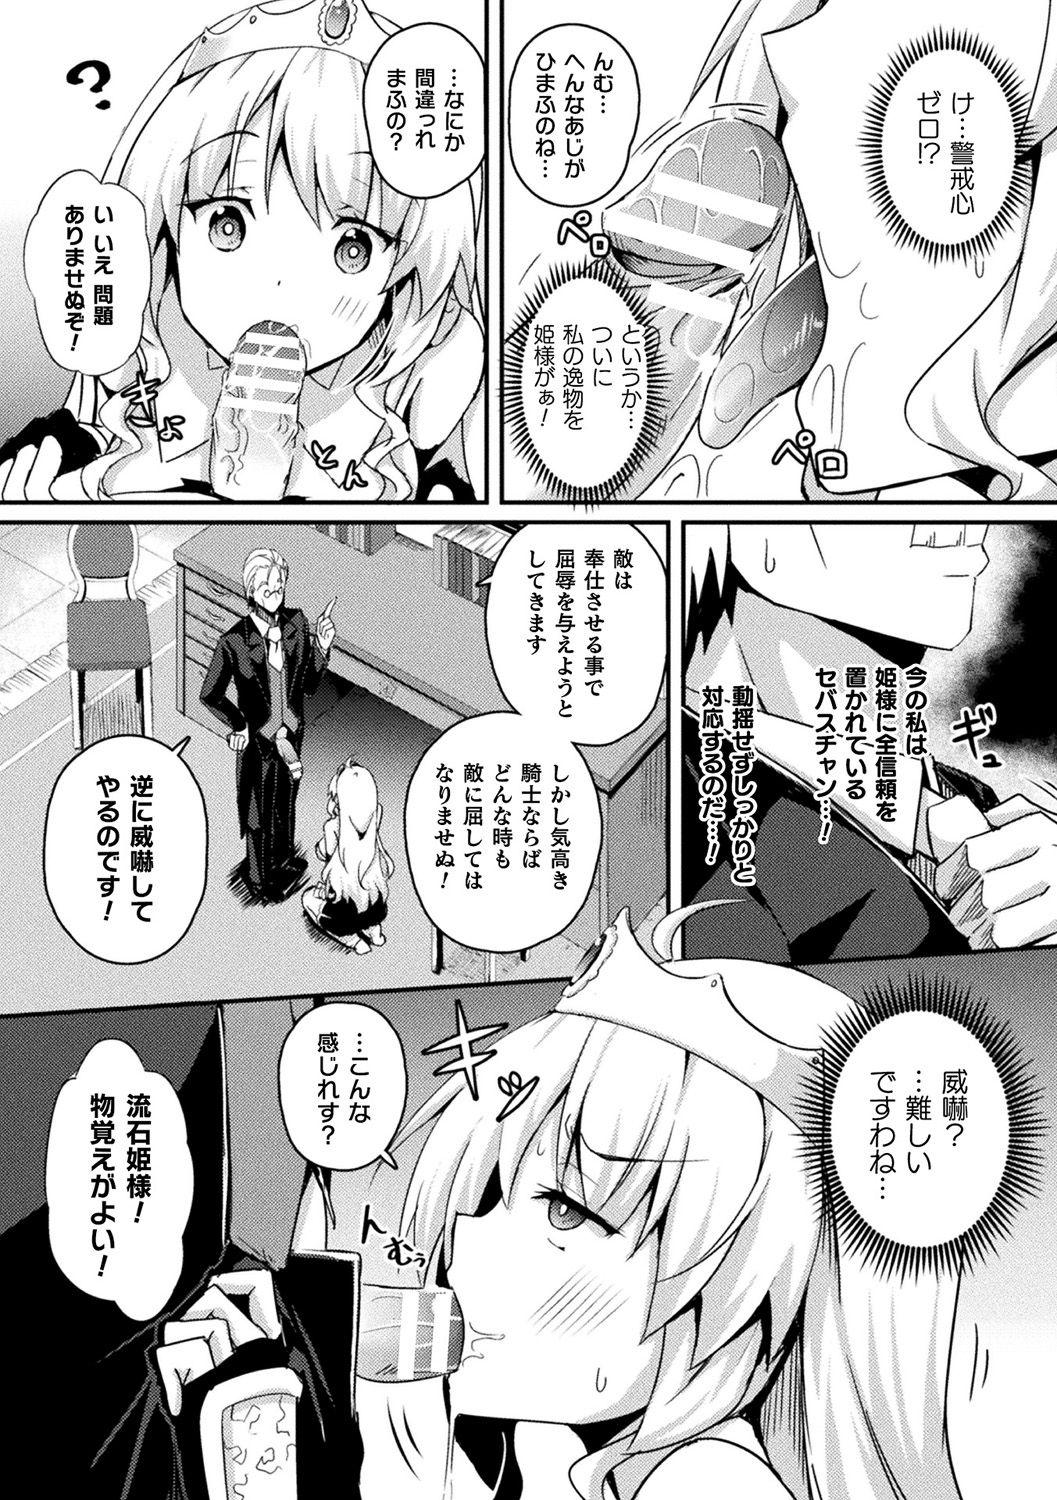 [Anthology] Bessatsu Comic Unreal Ponkotsu Fantasy Heroine H ~Doji o Funde Gyakuten Saretari Ero Trap ni Hamattari!?~ Vol. 2 [Digital] 7